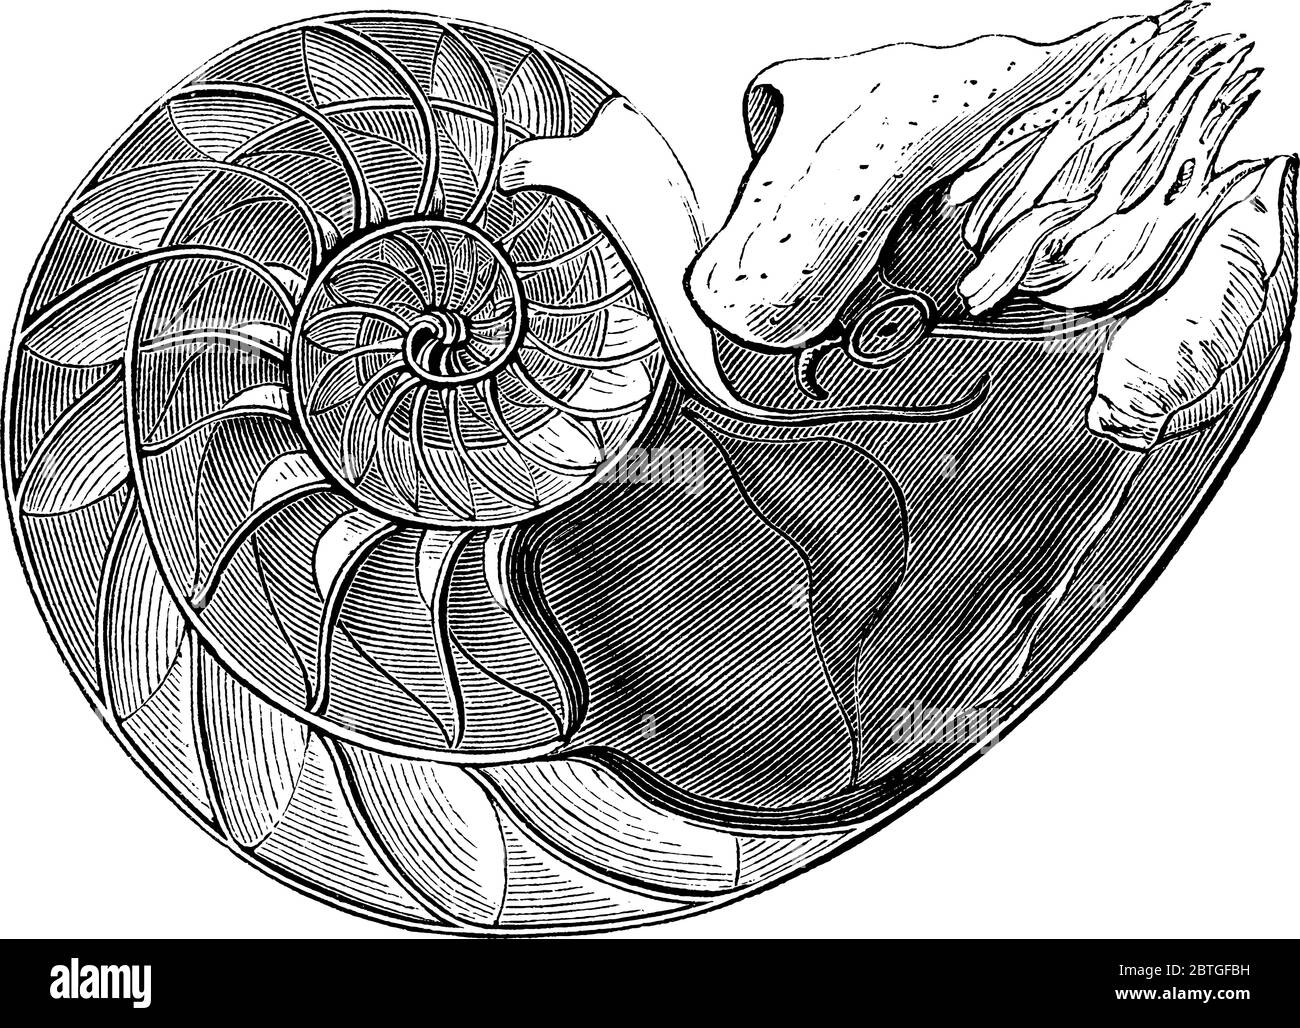 Il priny Nautilus è un mollusco marino pelagico della famiglia dei cefalopodi Nautilidae. Ha ripartito guscio esterno perlato pallido con strisce marroni Illustrazione Vettoriale